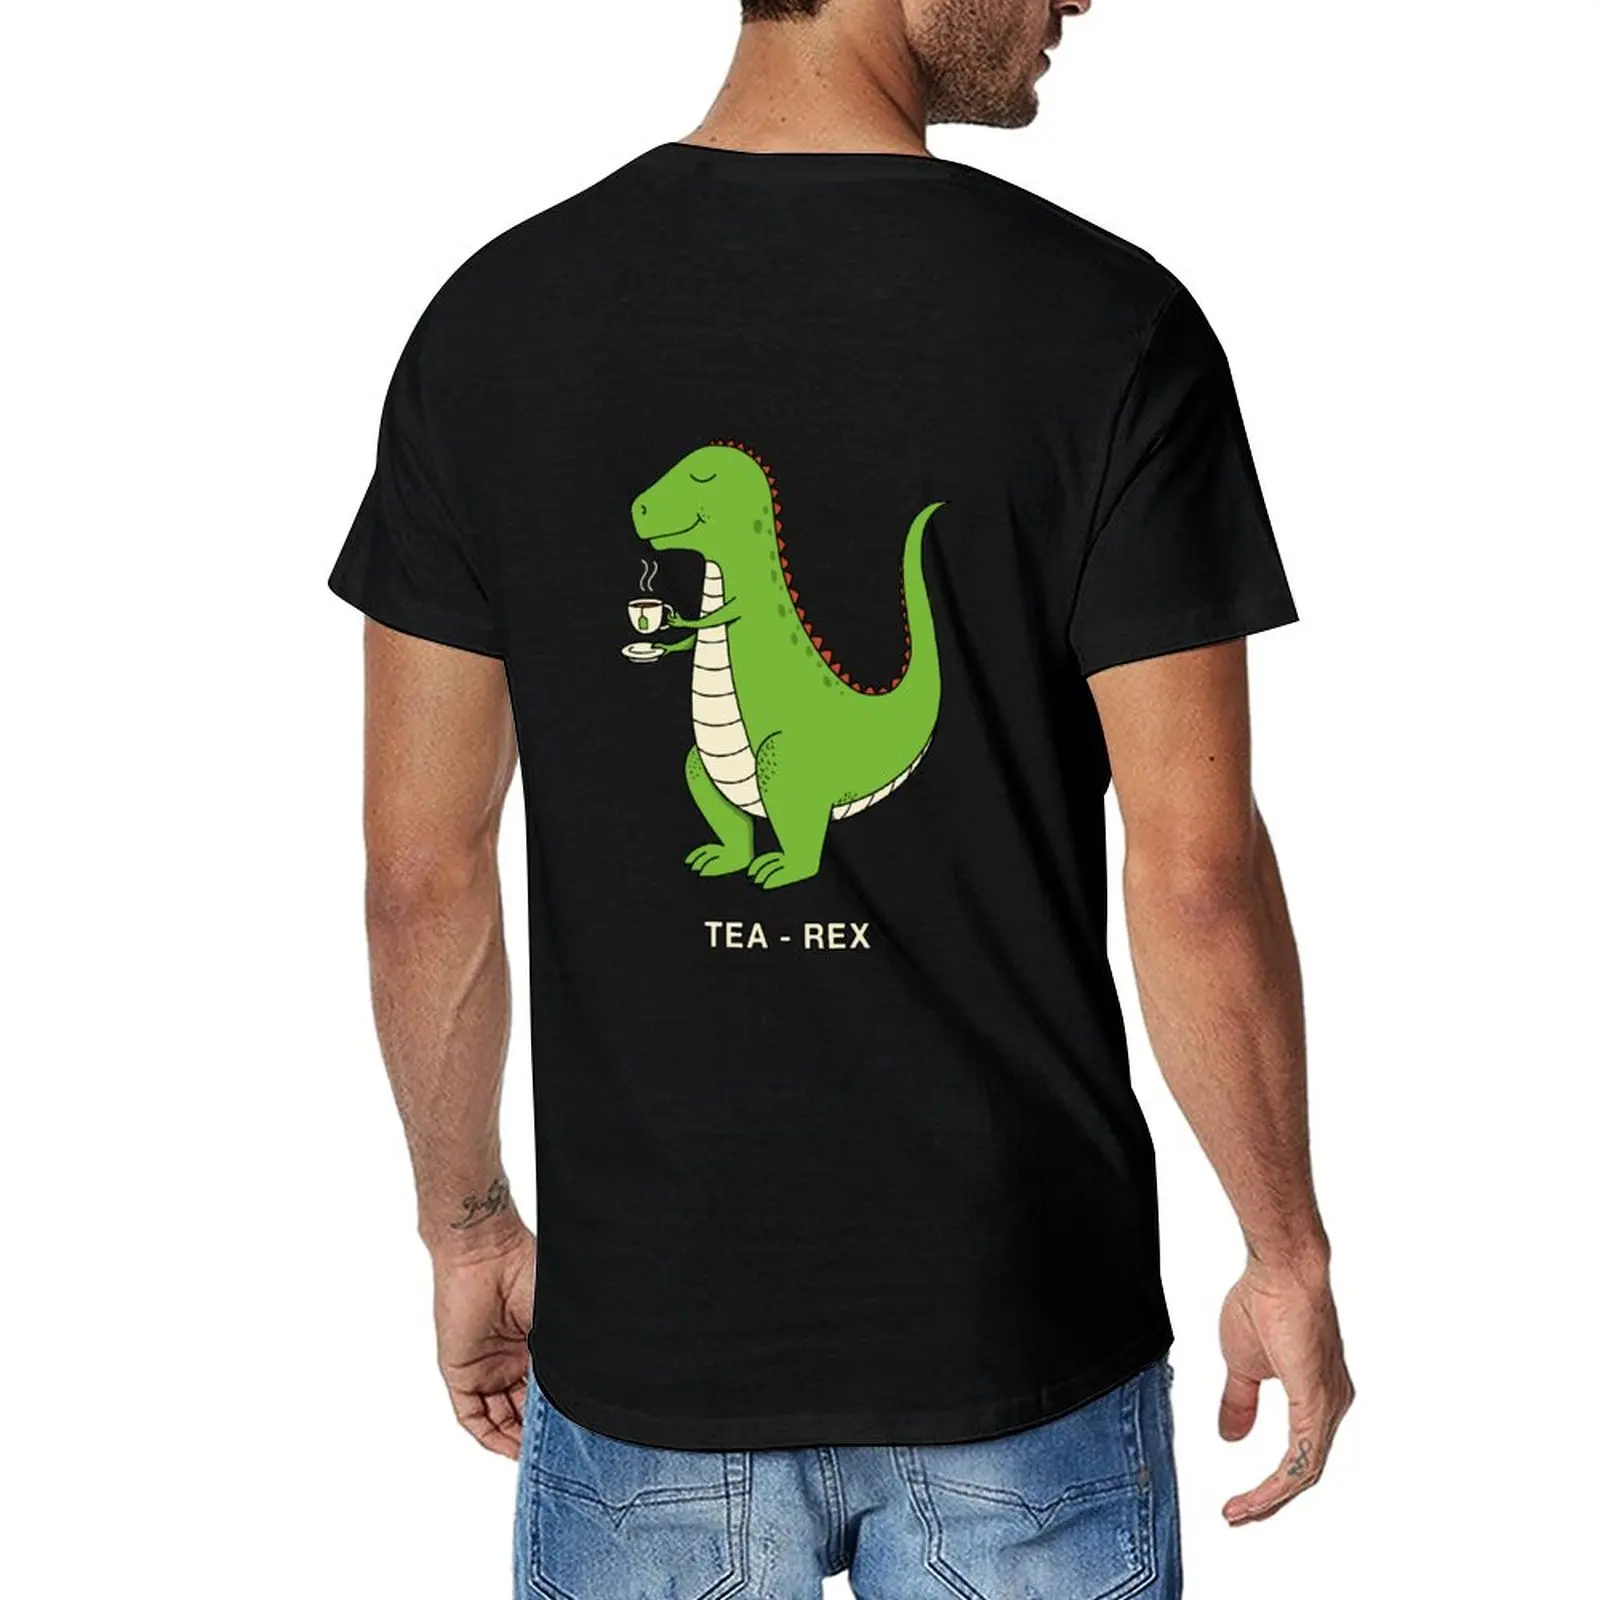 Новая футболка Tea Rex, милая одежда, футболки больших размеров, мужские высокие футболки 0